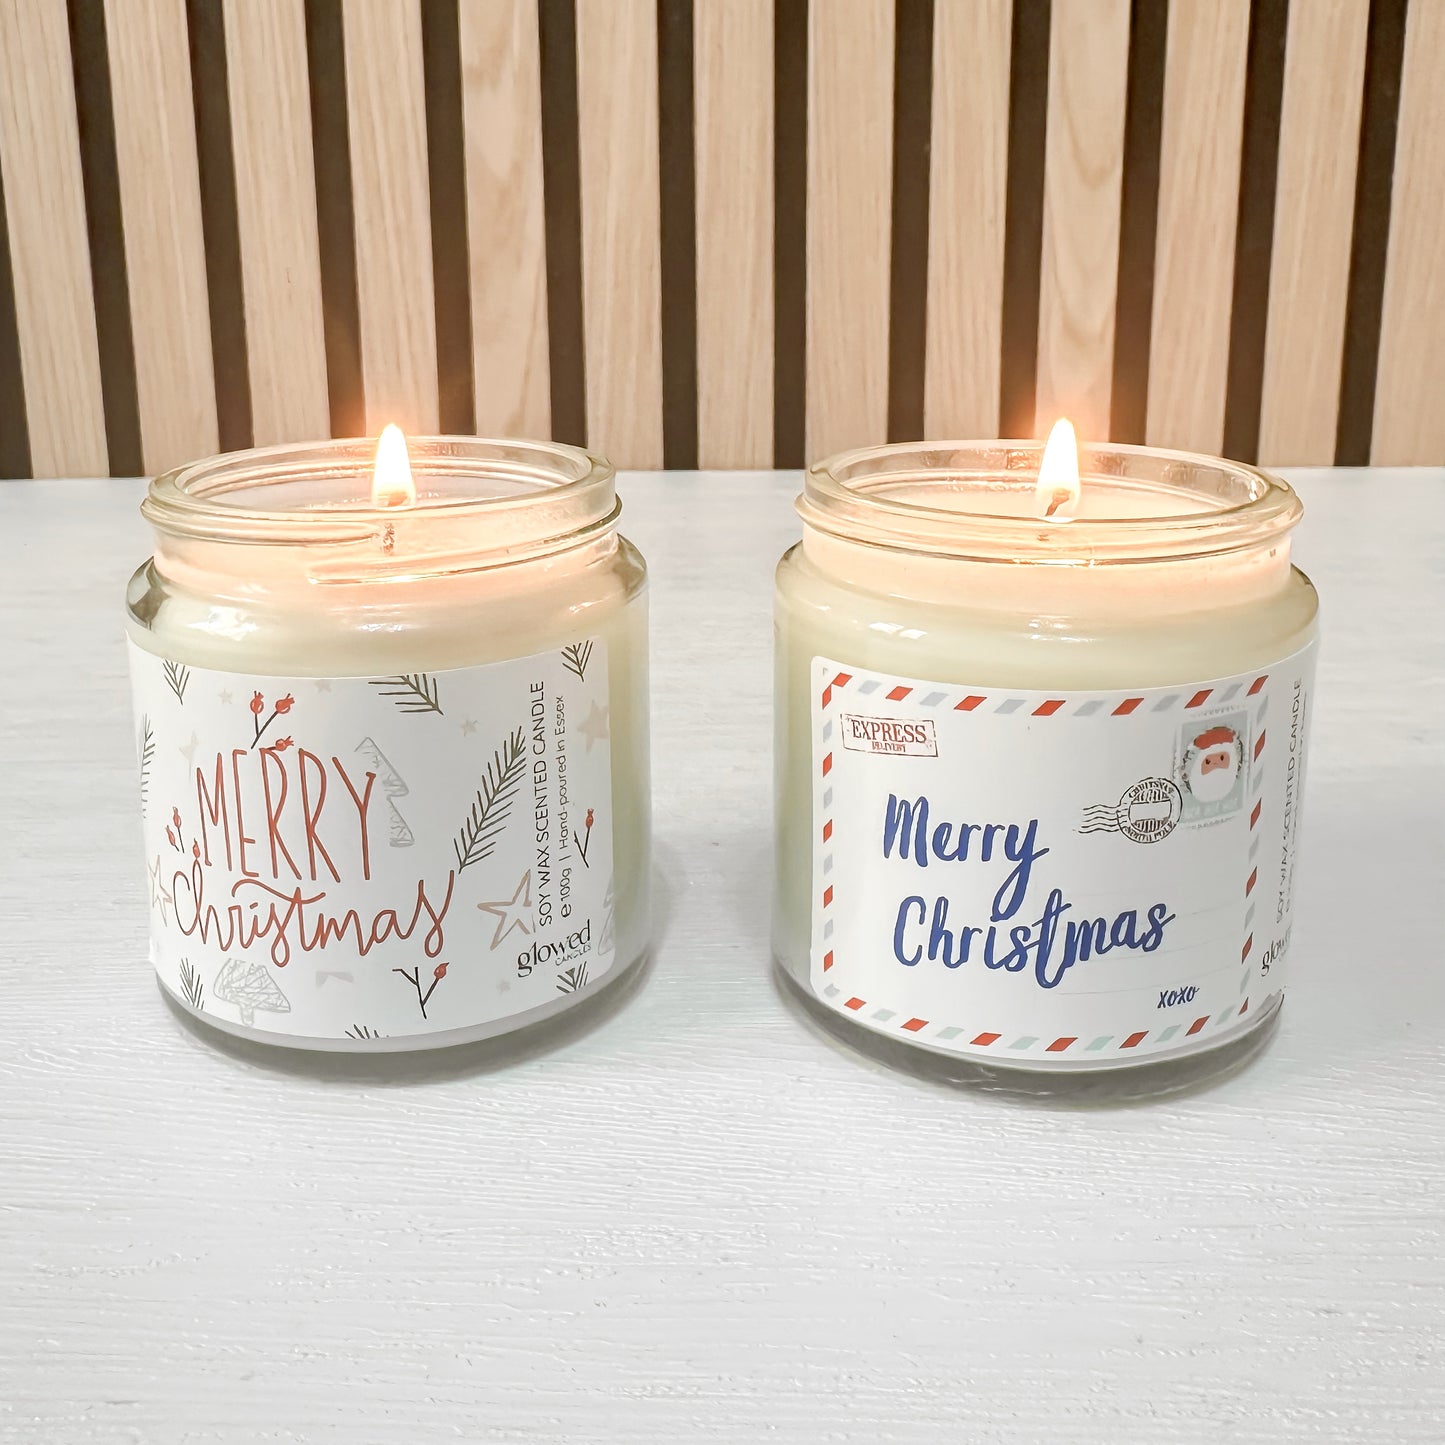 Christmas scented candle | Stocking filler | Secret Santa